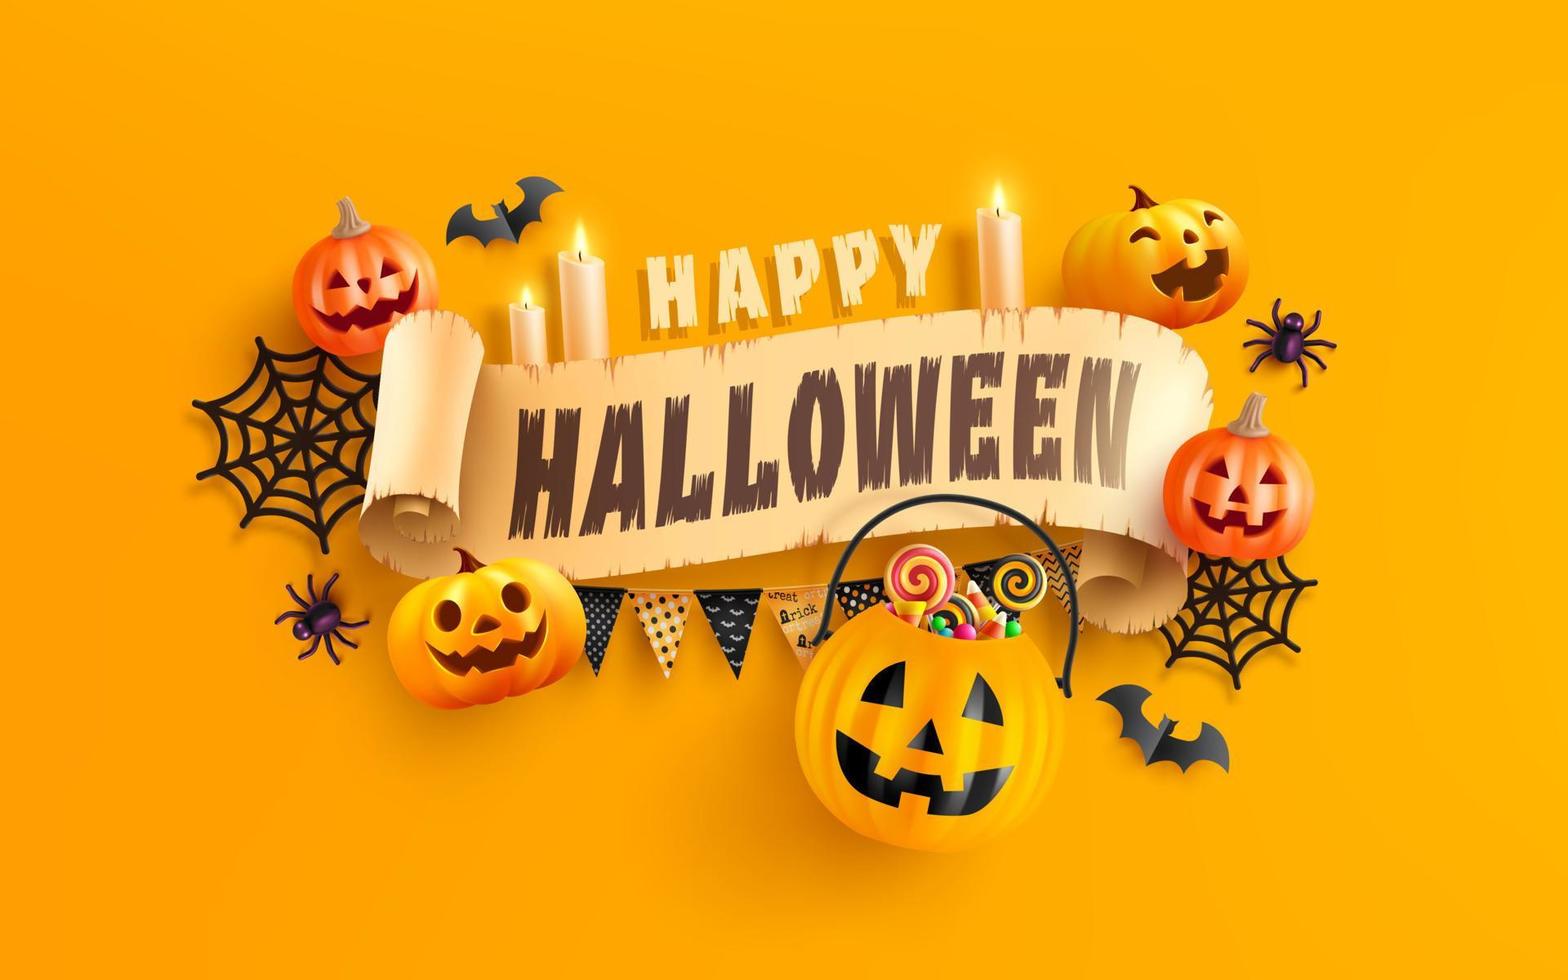 modèle de bannière joyeux halloween avec citrouille d'halloween et éléments d'halloween sur fond orange. site web fantasmagorique, arrière-plan ou bannière modèle halloween vecteur